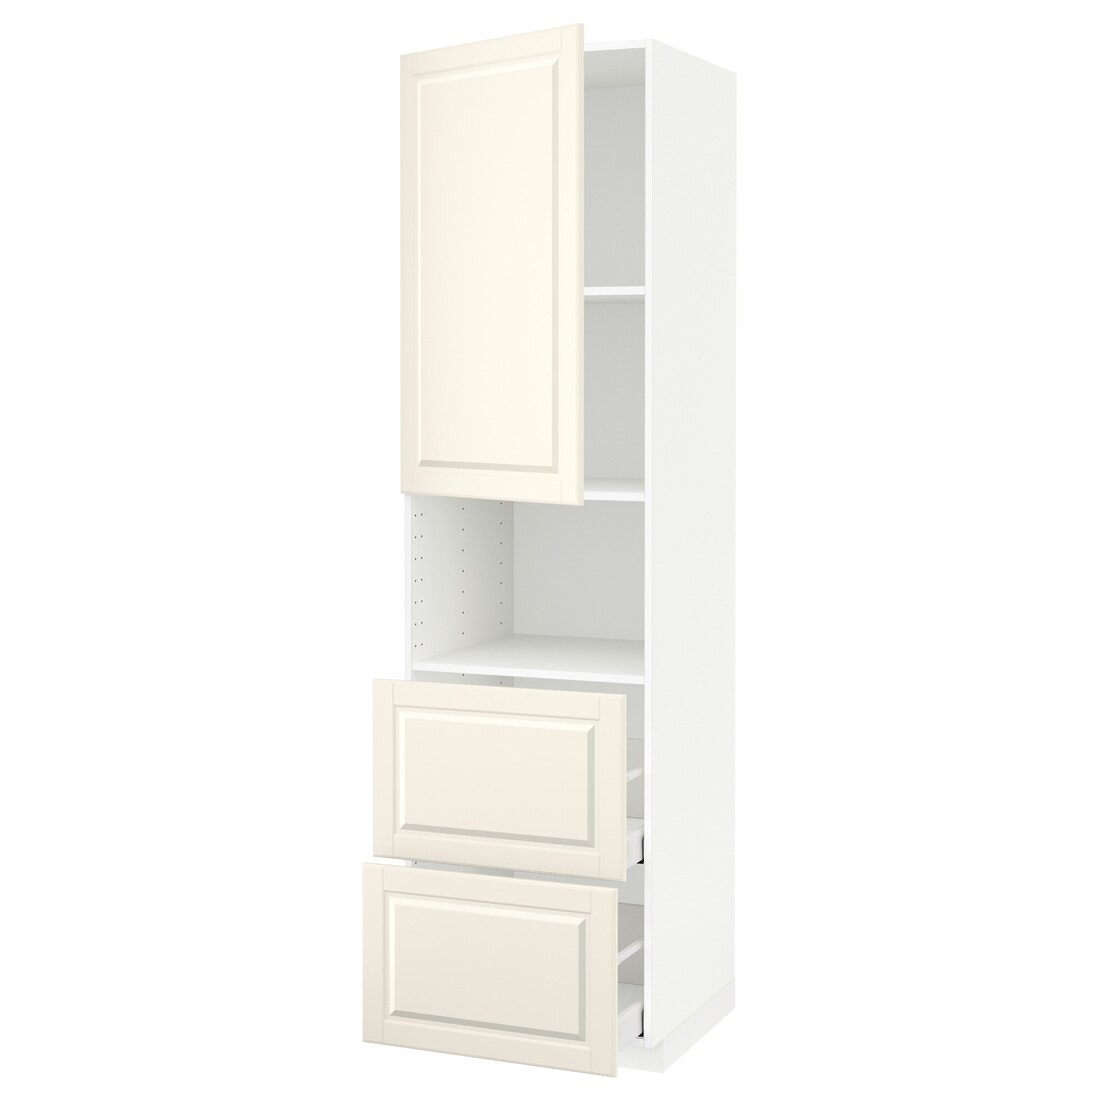 IKEA METOD МЕТОД / MAXIMERA МАКСИМЕРА Высокий шкаф для микроволновки с дверями / 2 ящика, белый / Bodbyn кремовый, 60x60x220 см 19468413 | 194.684.13